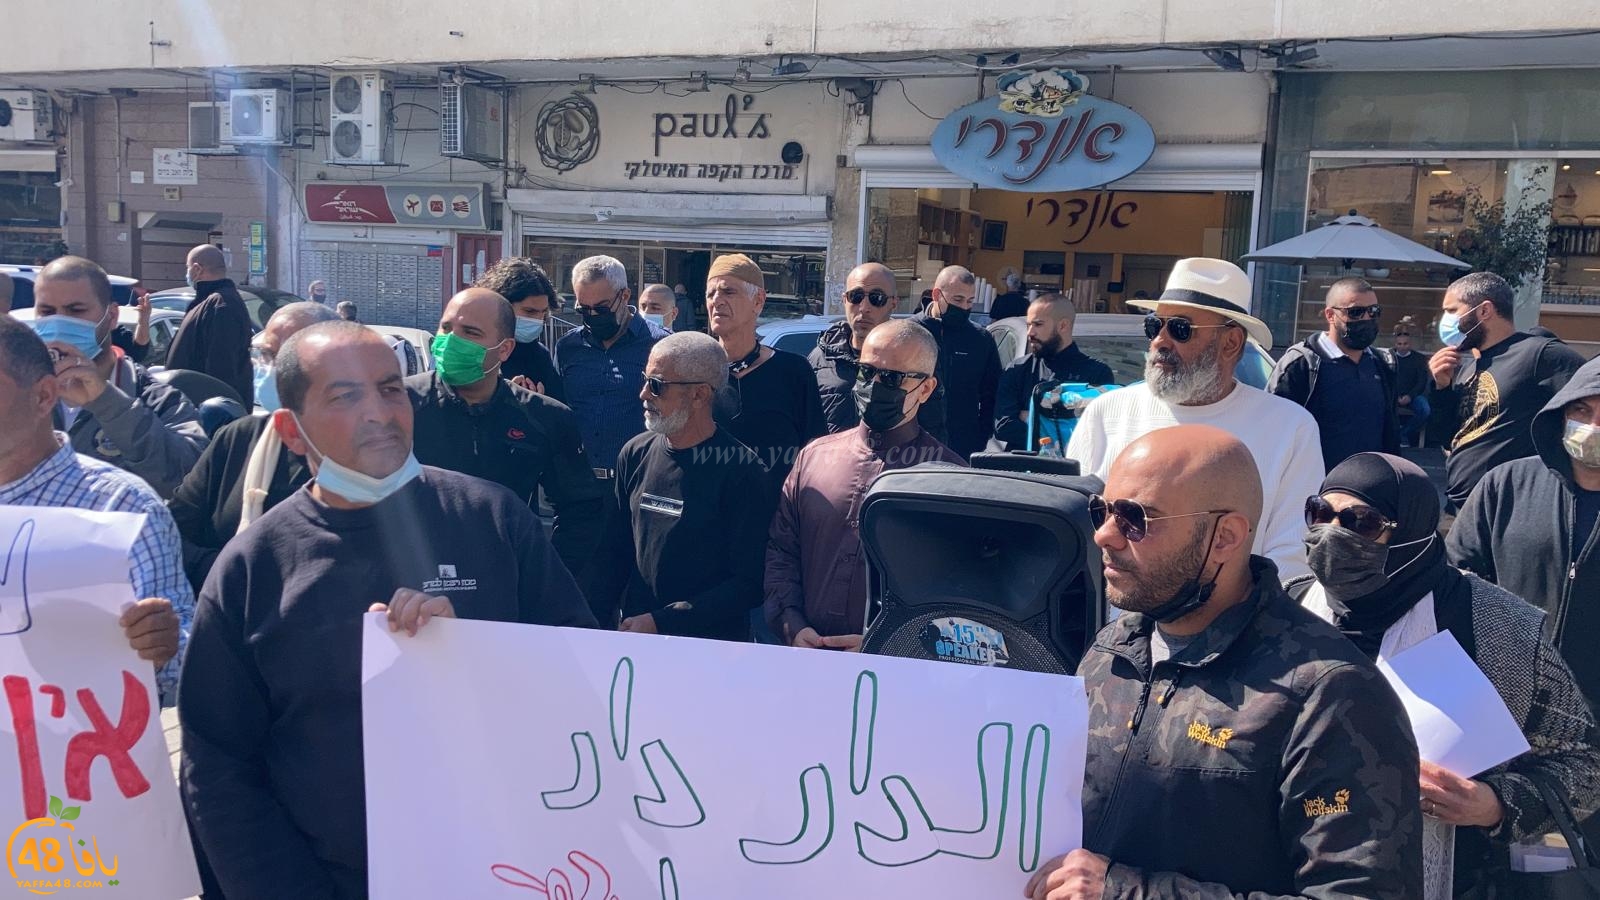 فيديو: أهالي يافا في تظاهرة احتجاجية ضد شركة عميدار ومخططاتها 